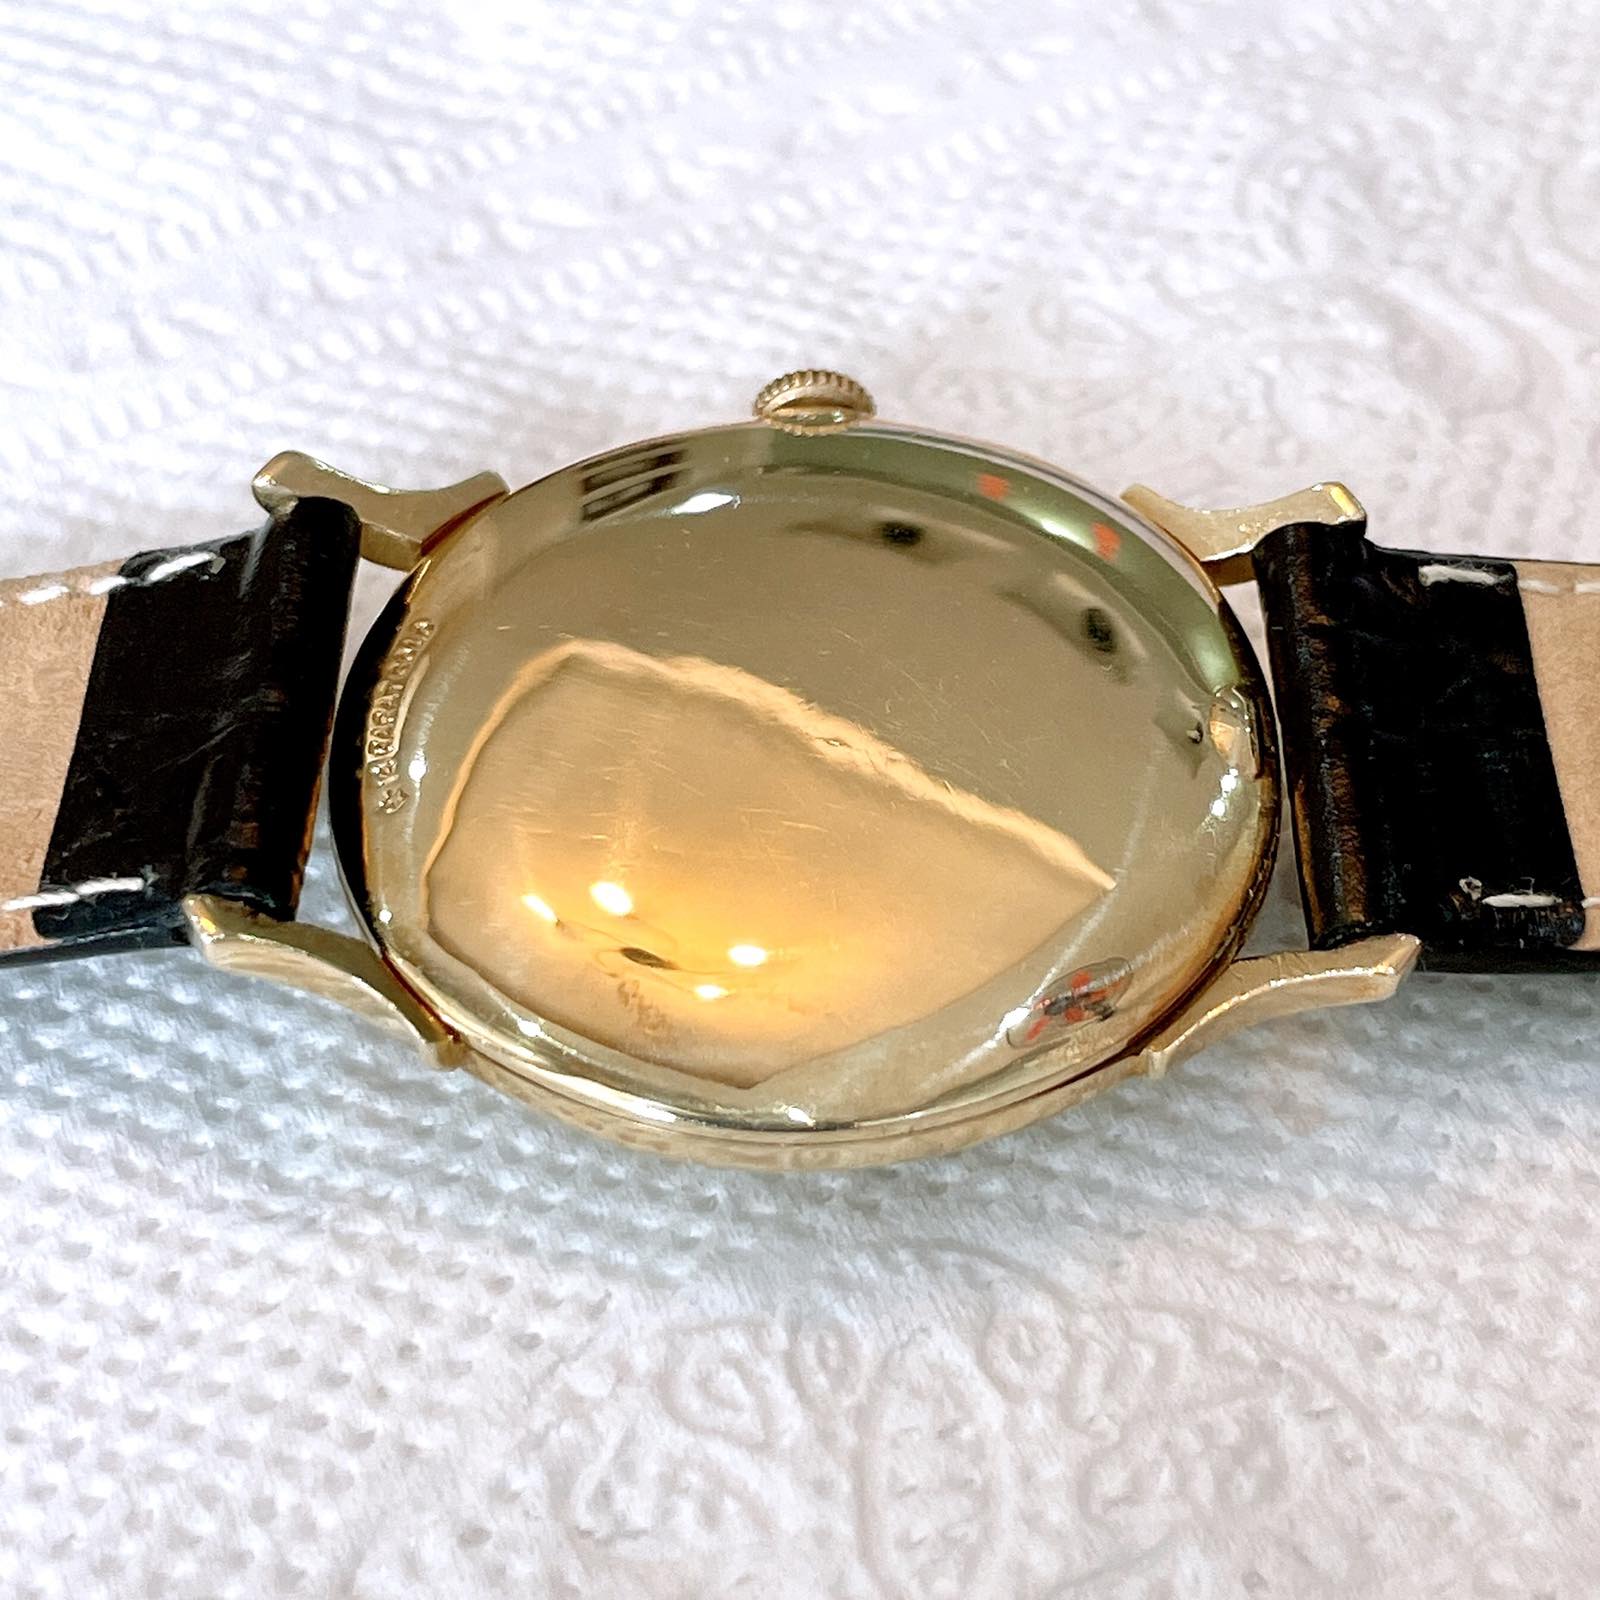 Đồng hồ cổ Longines lên dây vàng đúc 18k chính hãng thụy Sĩ 